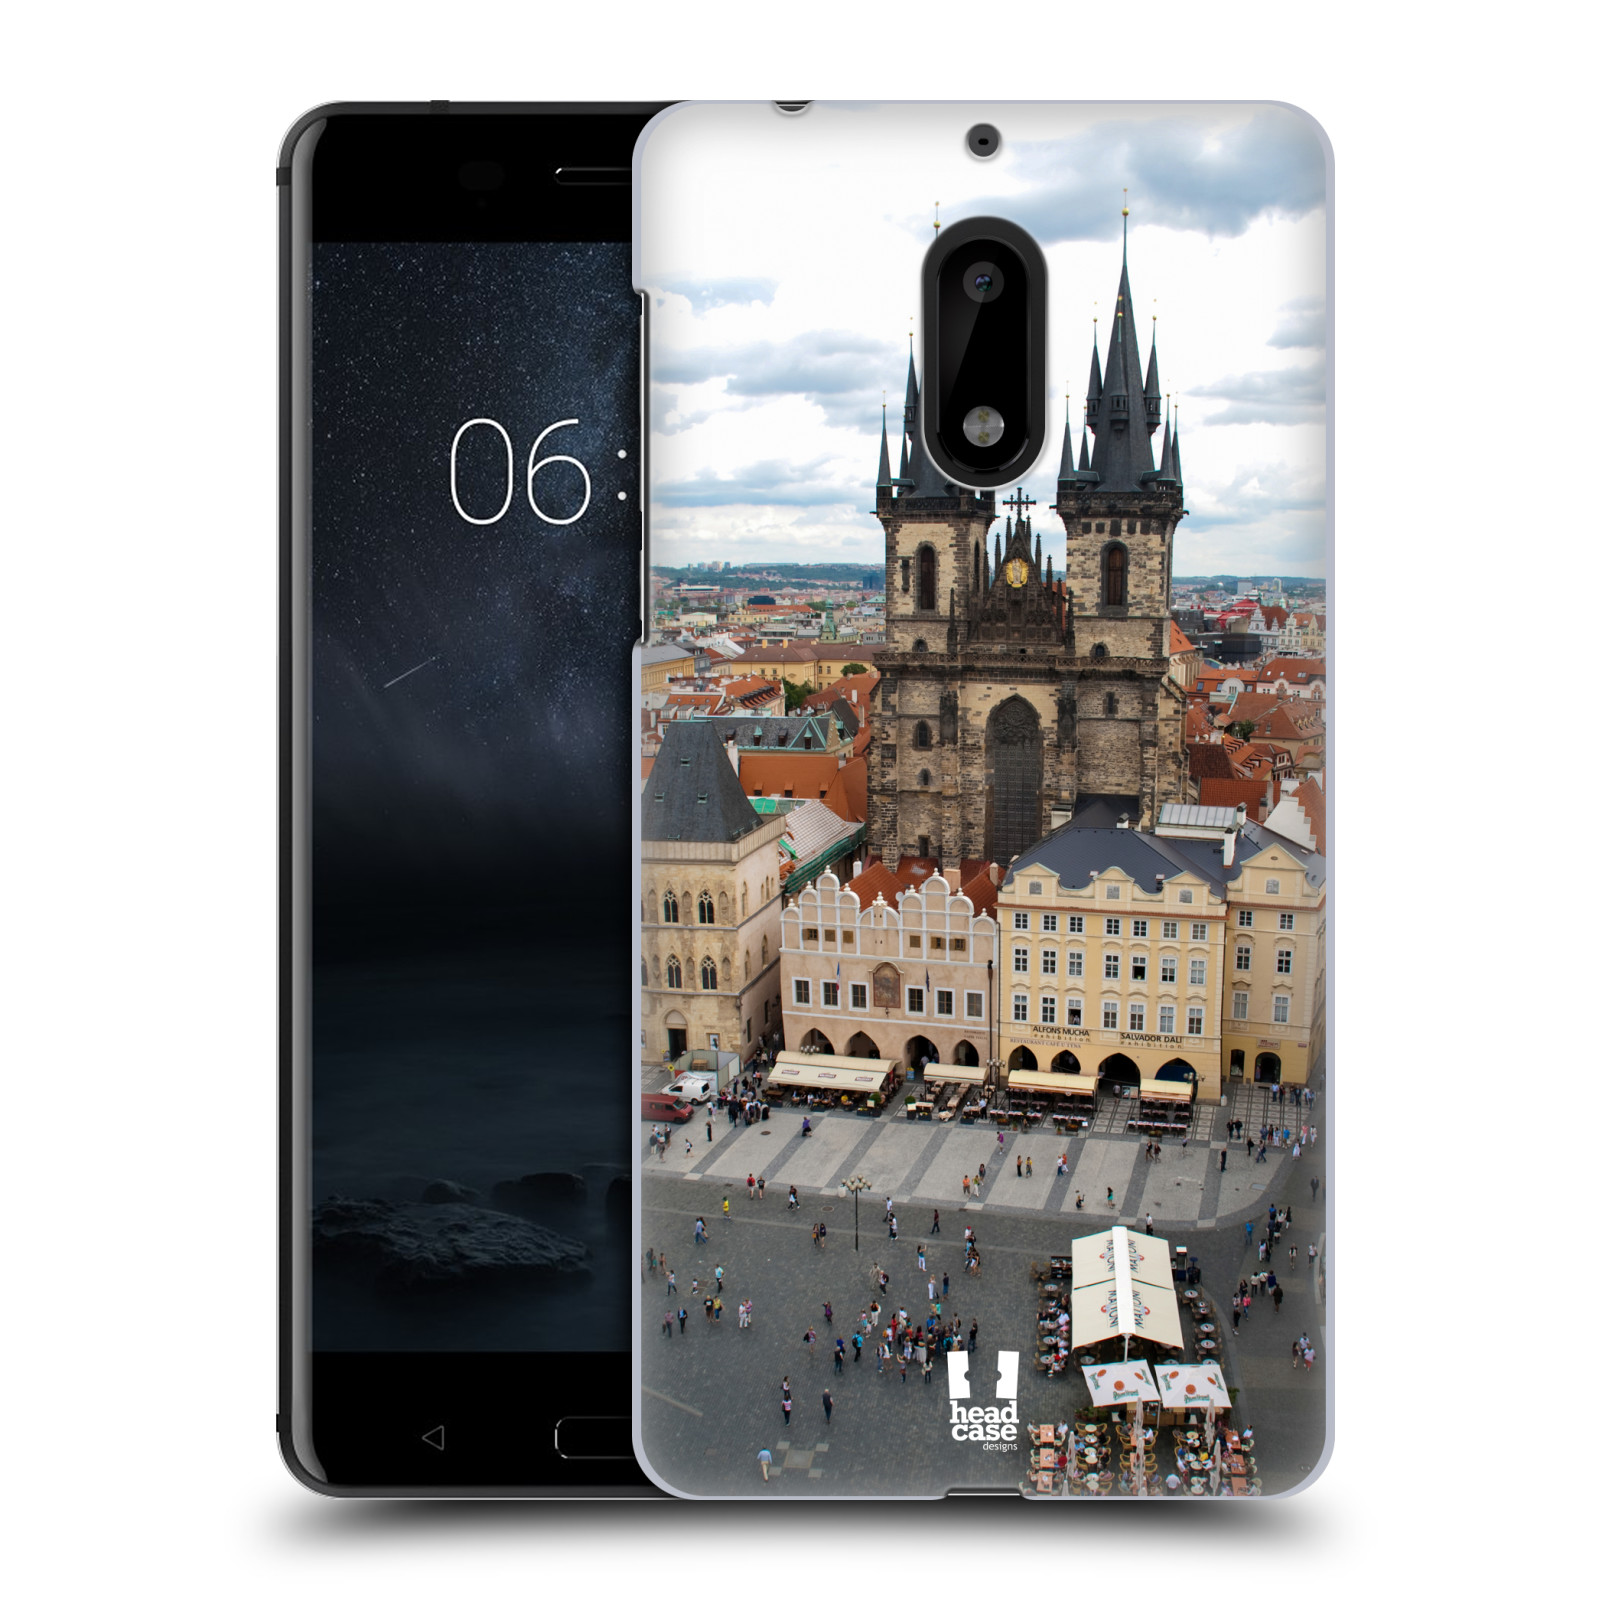 HEAD CASE plastový obal na mobil Nokia 6 vzor Města foto náměstí ČESKÁ REPUBLIKA, PRAHA, STAROMĚSTSKÉ NÁMĚSTÍ